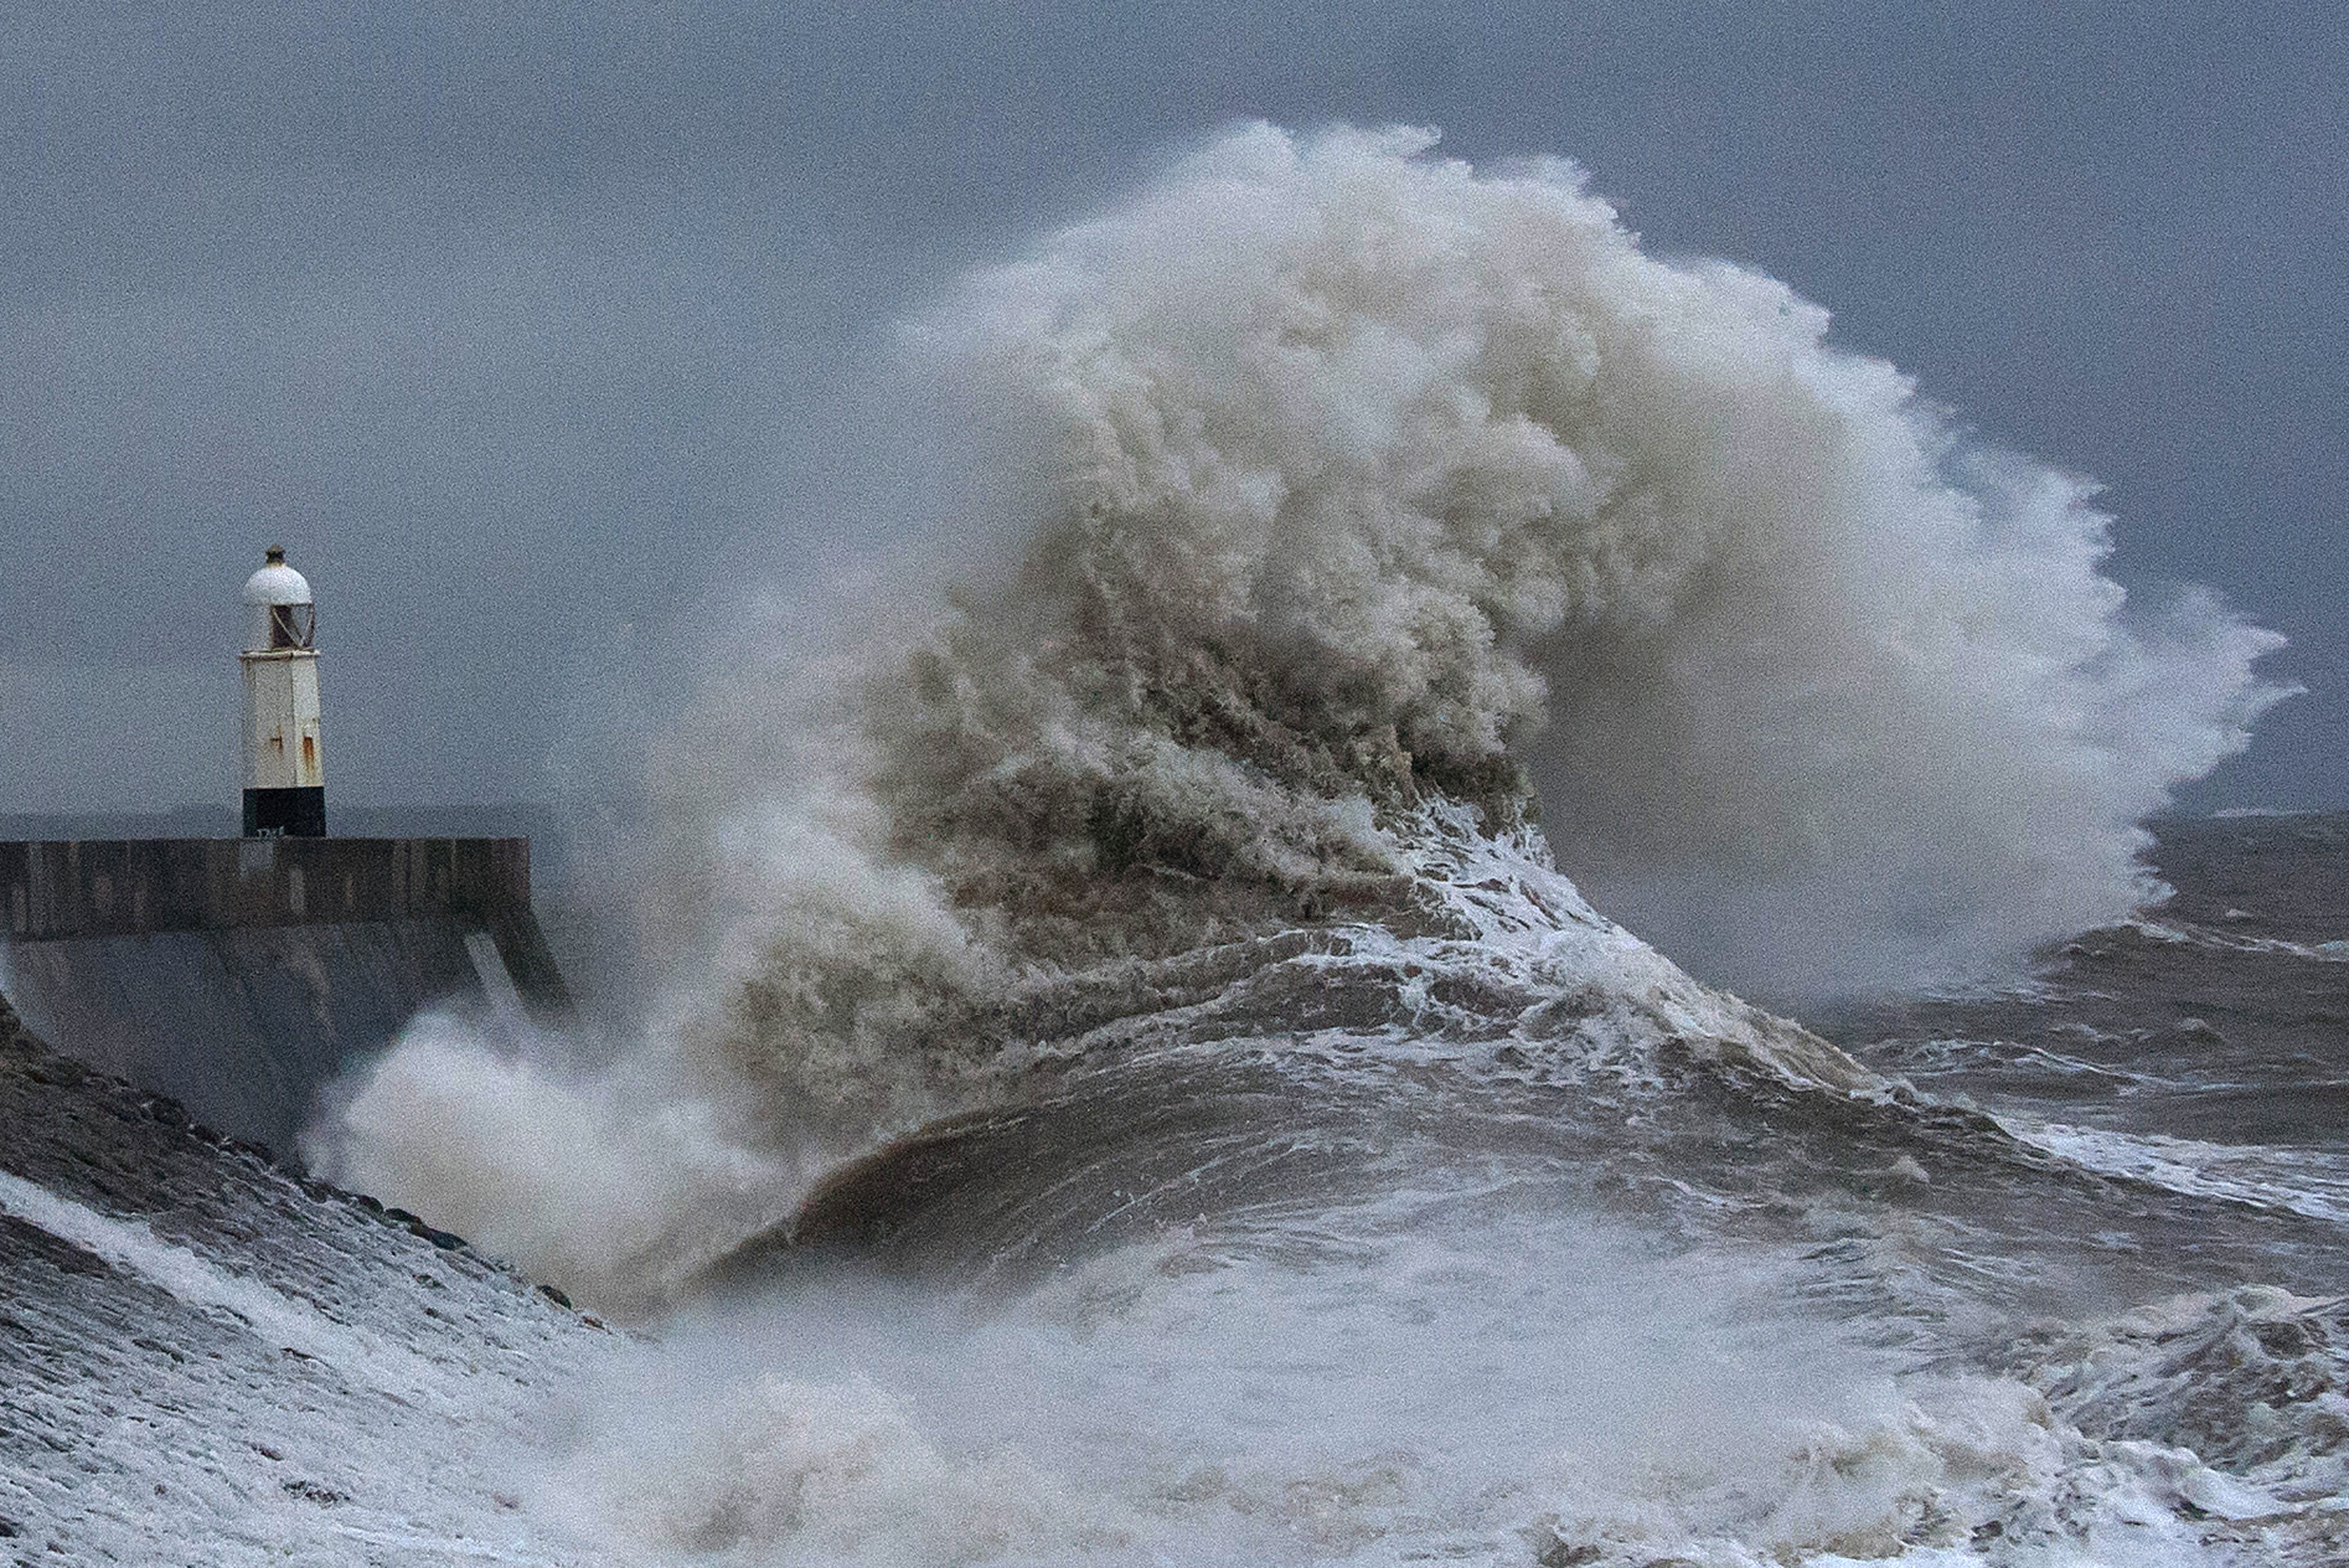 Heftige Winde sorgen heute für Chaos, auch in Porthcawl, Wales